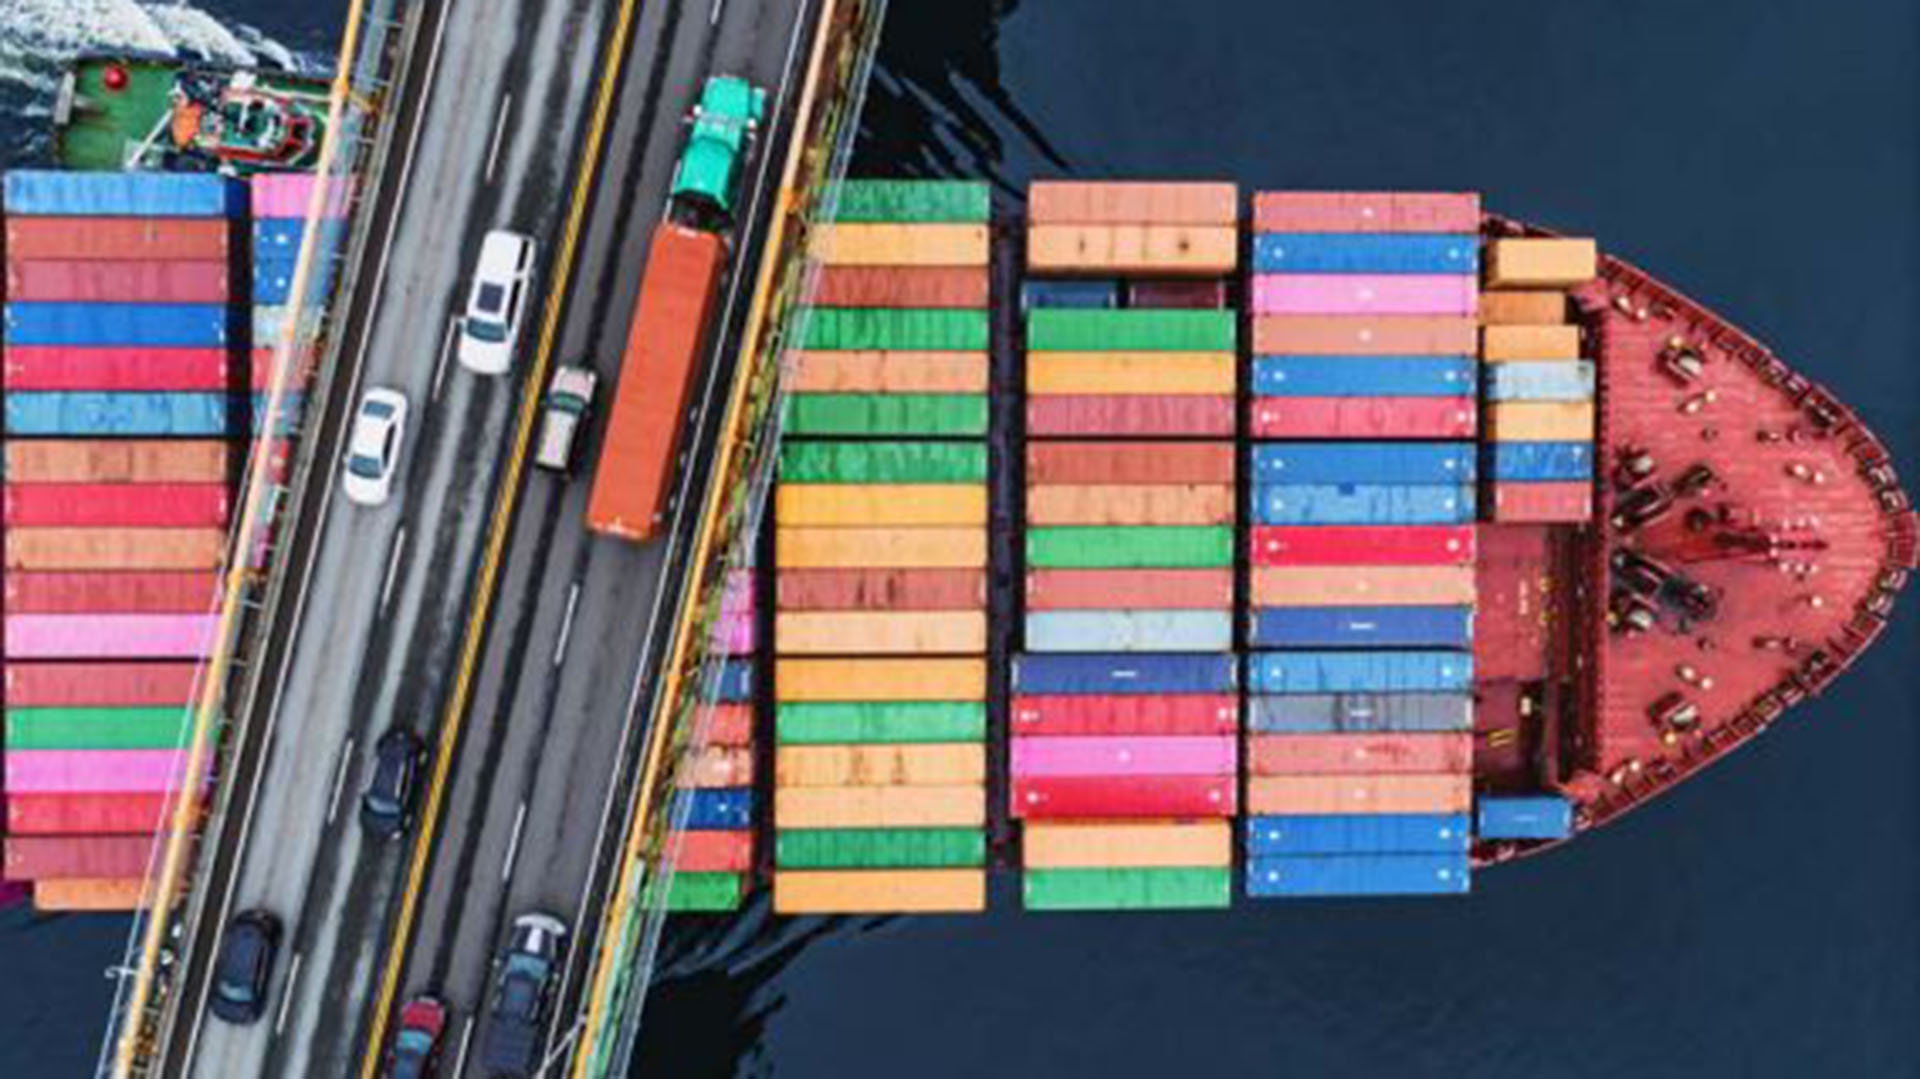 La imagen de un buque portacontenedores atravesando un puente ayuda a dimensionar el peso del transporte marítimo en el comercio mundial